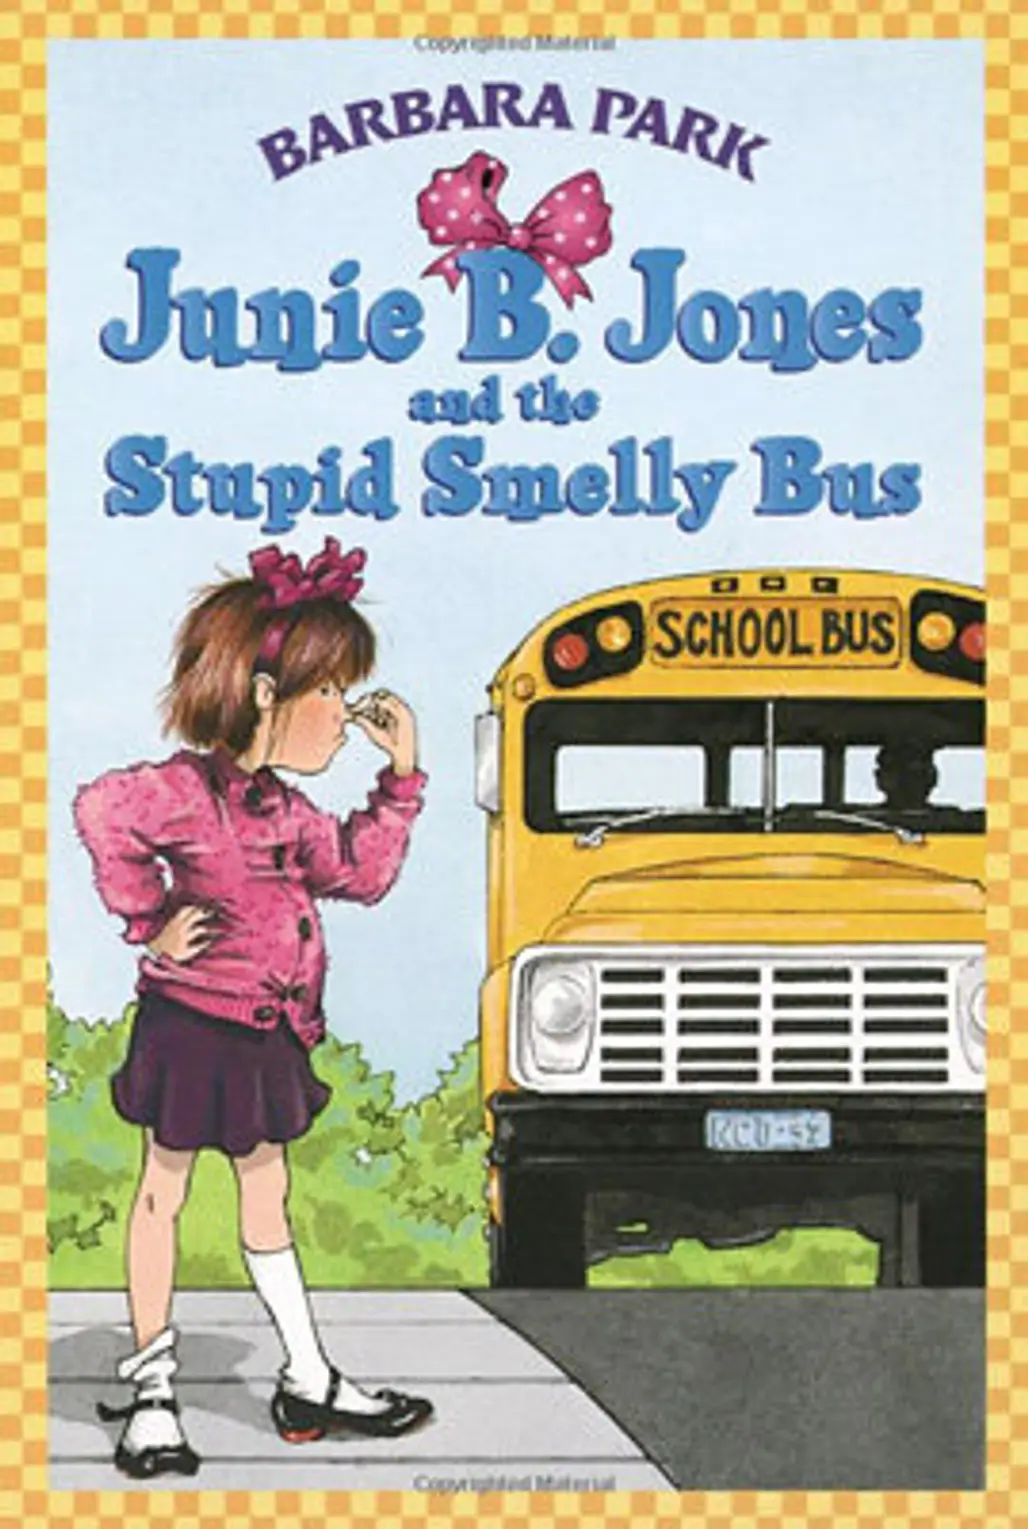 Junie B. Jones Series by Barbara Park